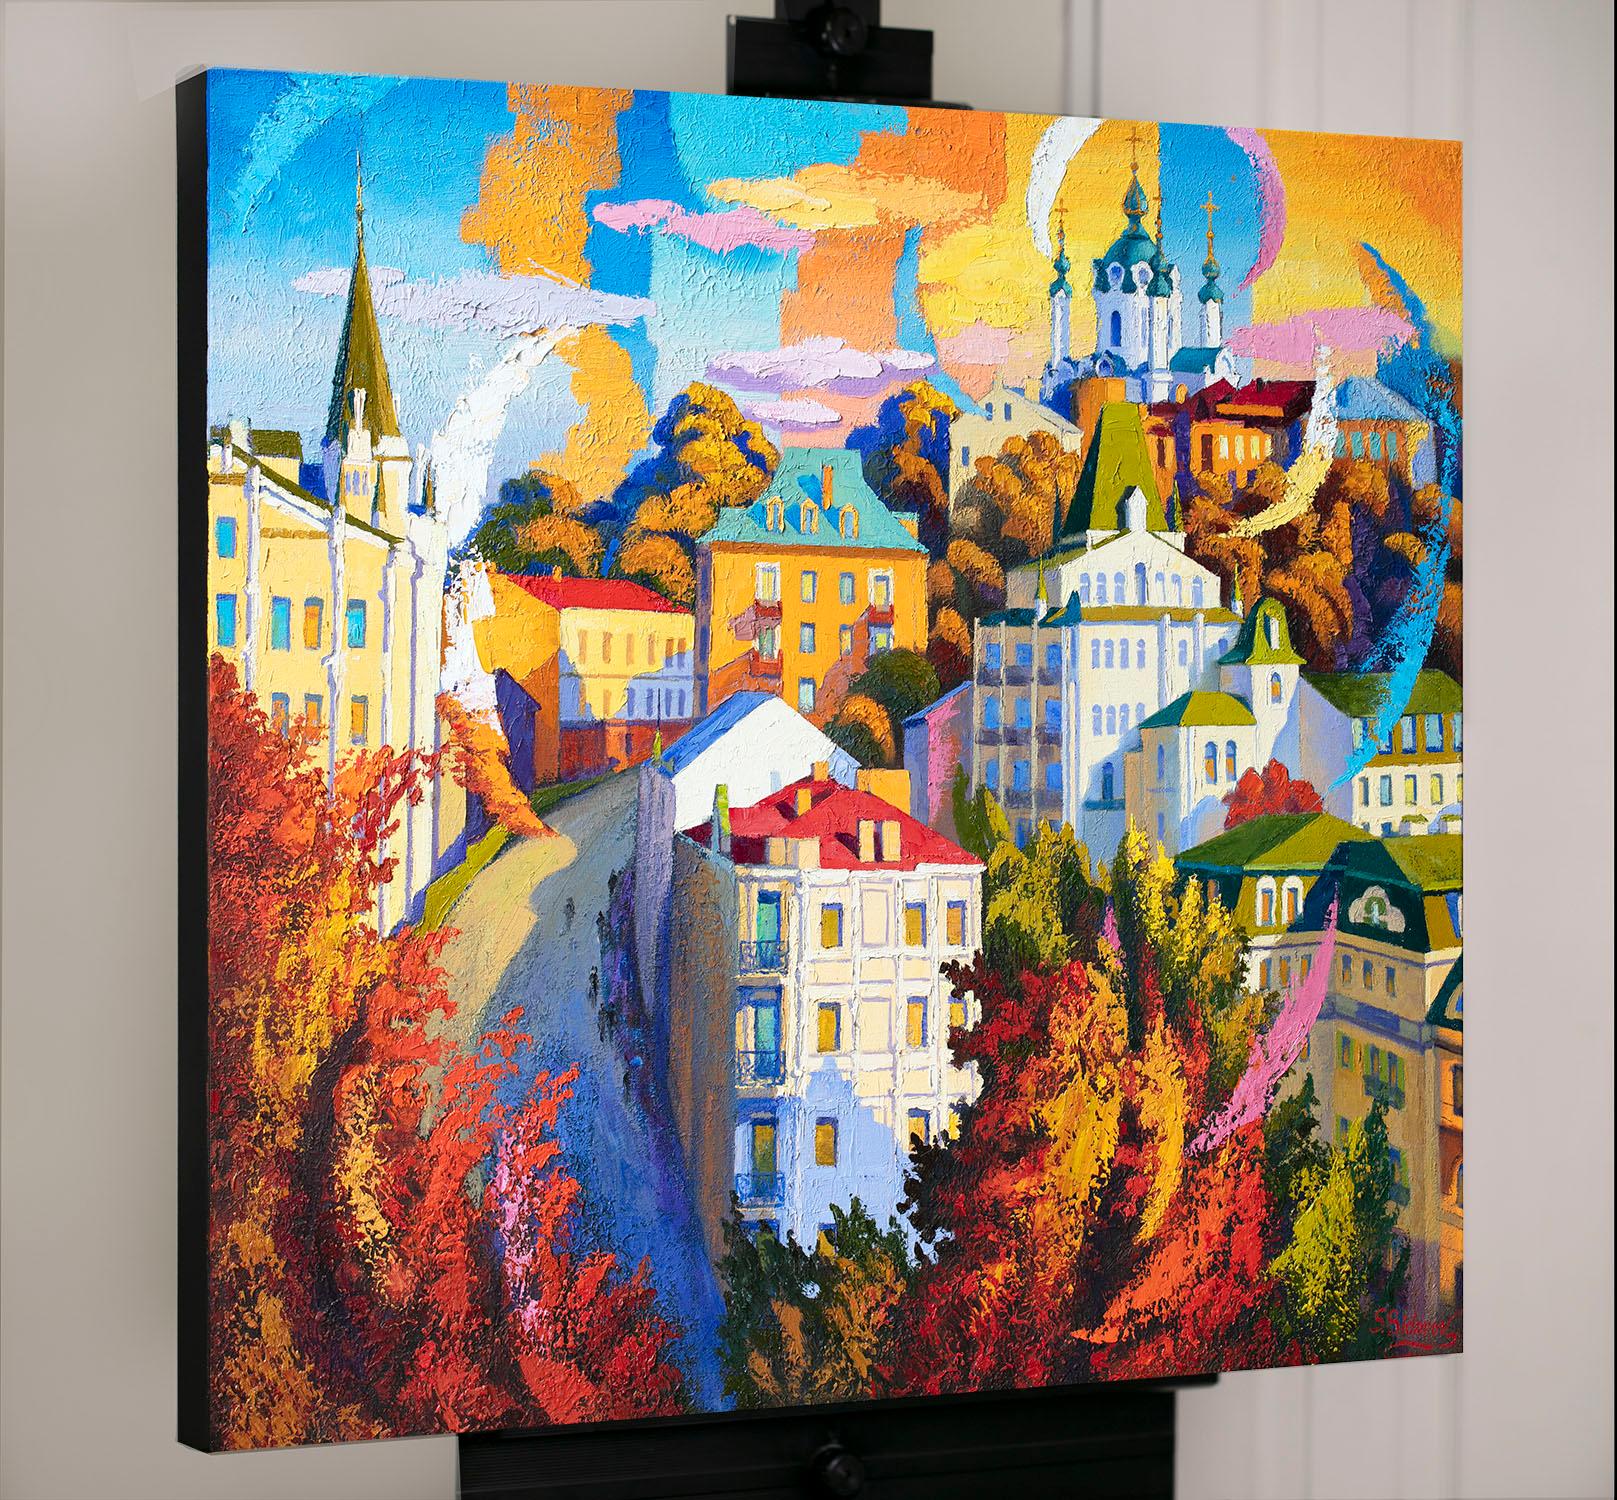 <p>Commentaires de l'artiste<br>Dans le cadre de sa série Cityscape, l'artiste Stanislav Sidorov capture la rue Andreevsky Spusk avec une palette vibrante. La cathédrale domine la ville et ses cloches sonnent pour les habitants et les touristes.